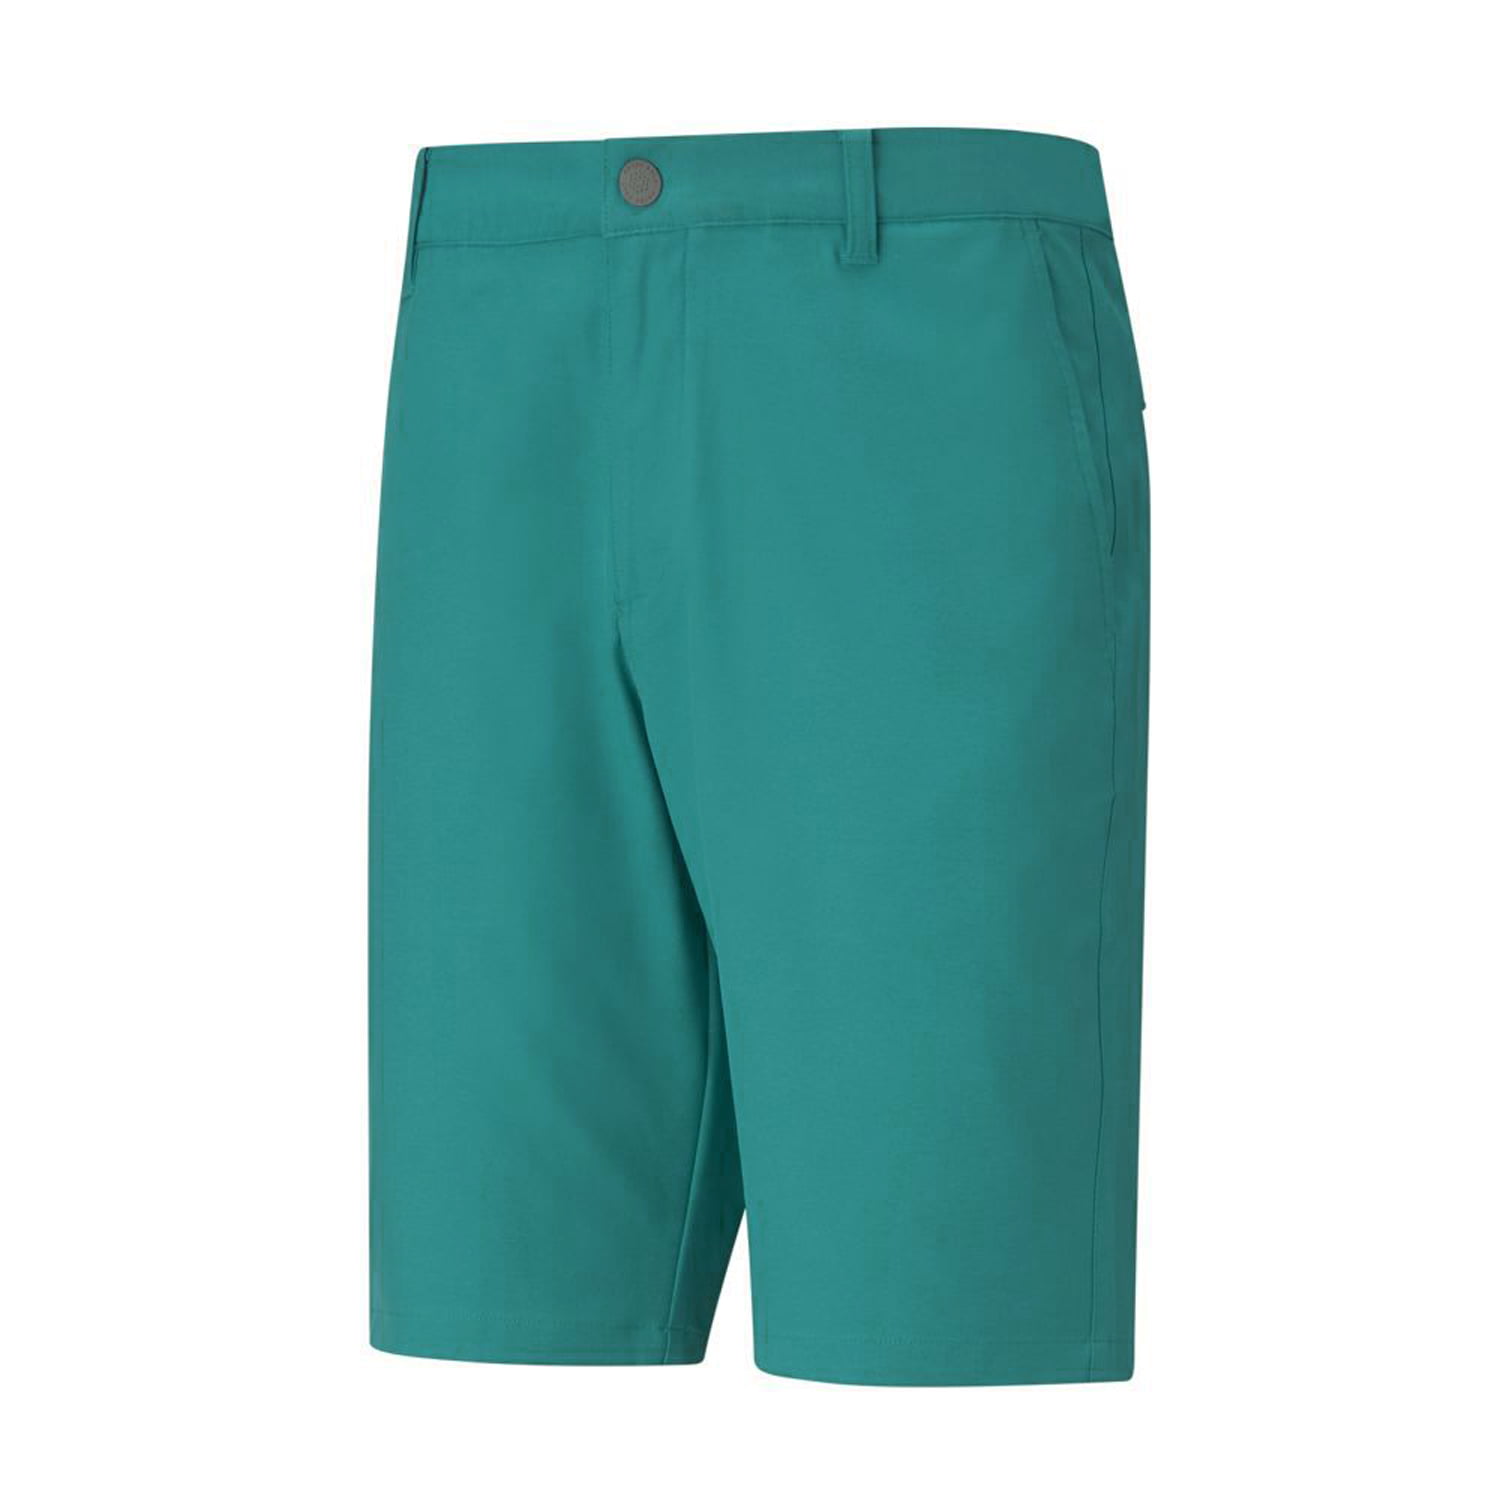 NEW Puma Jackpot Teal Men's Golf Shorts Waist Size 36 - Walmart.com